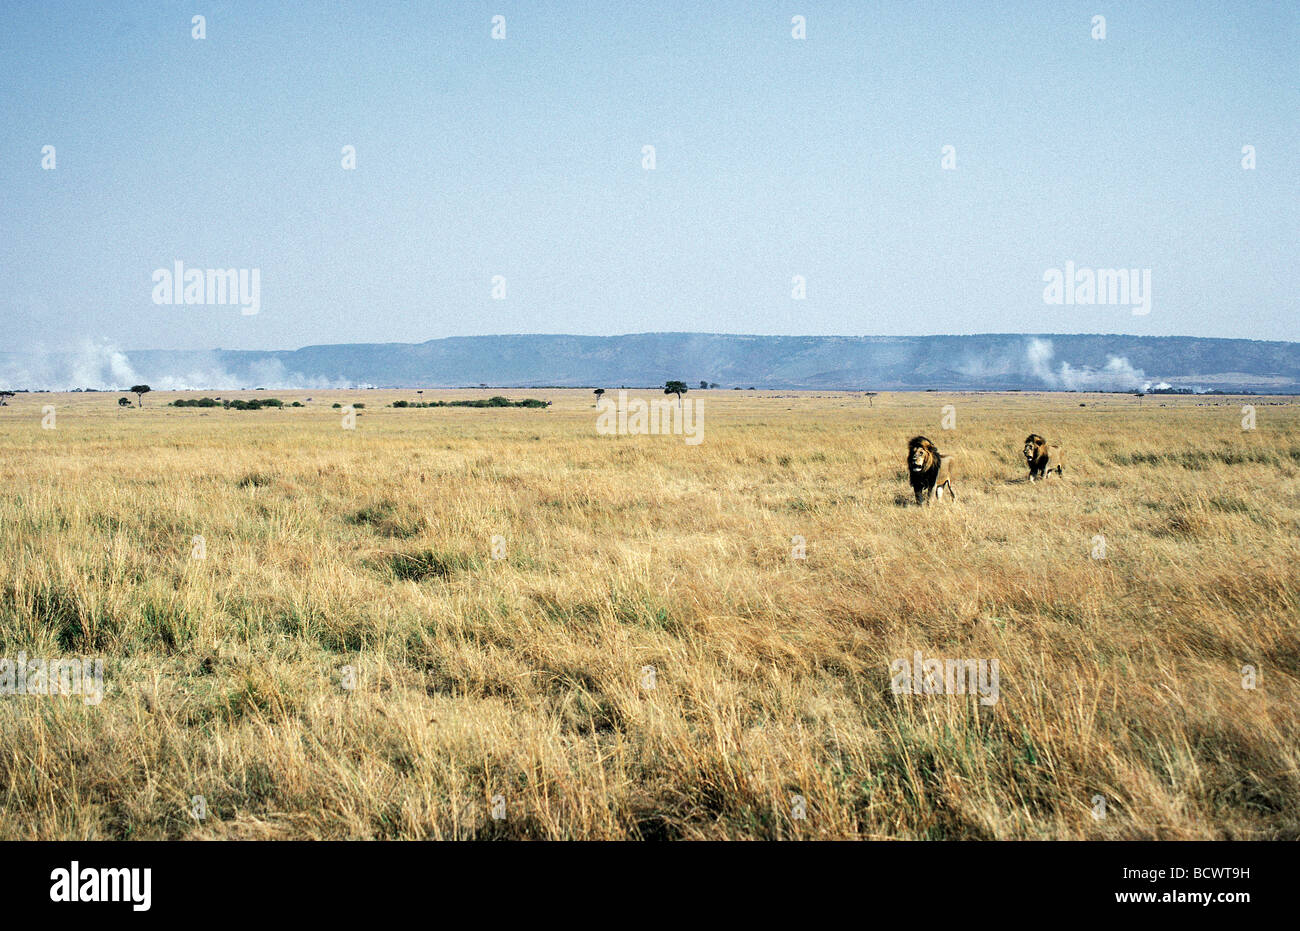 Zwei Reifen männlichen Löwen durch offene Savanne Grünland Rasen Kamine in Ferne Masai Mara National Reserve Kenia Afrika Stockfoto